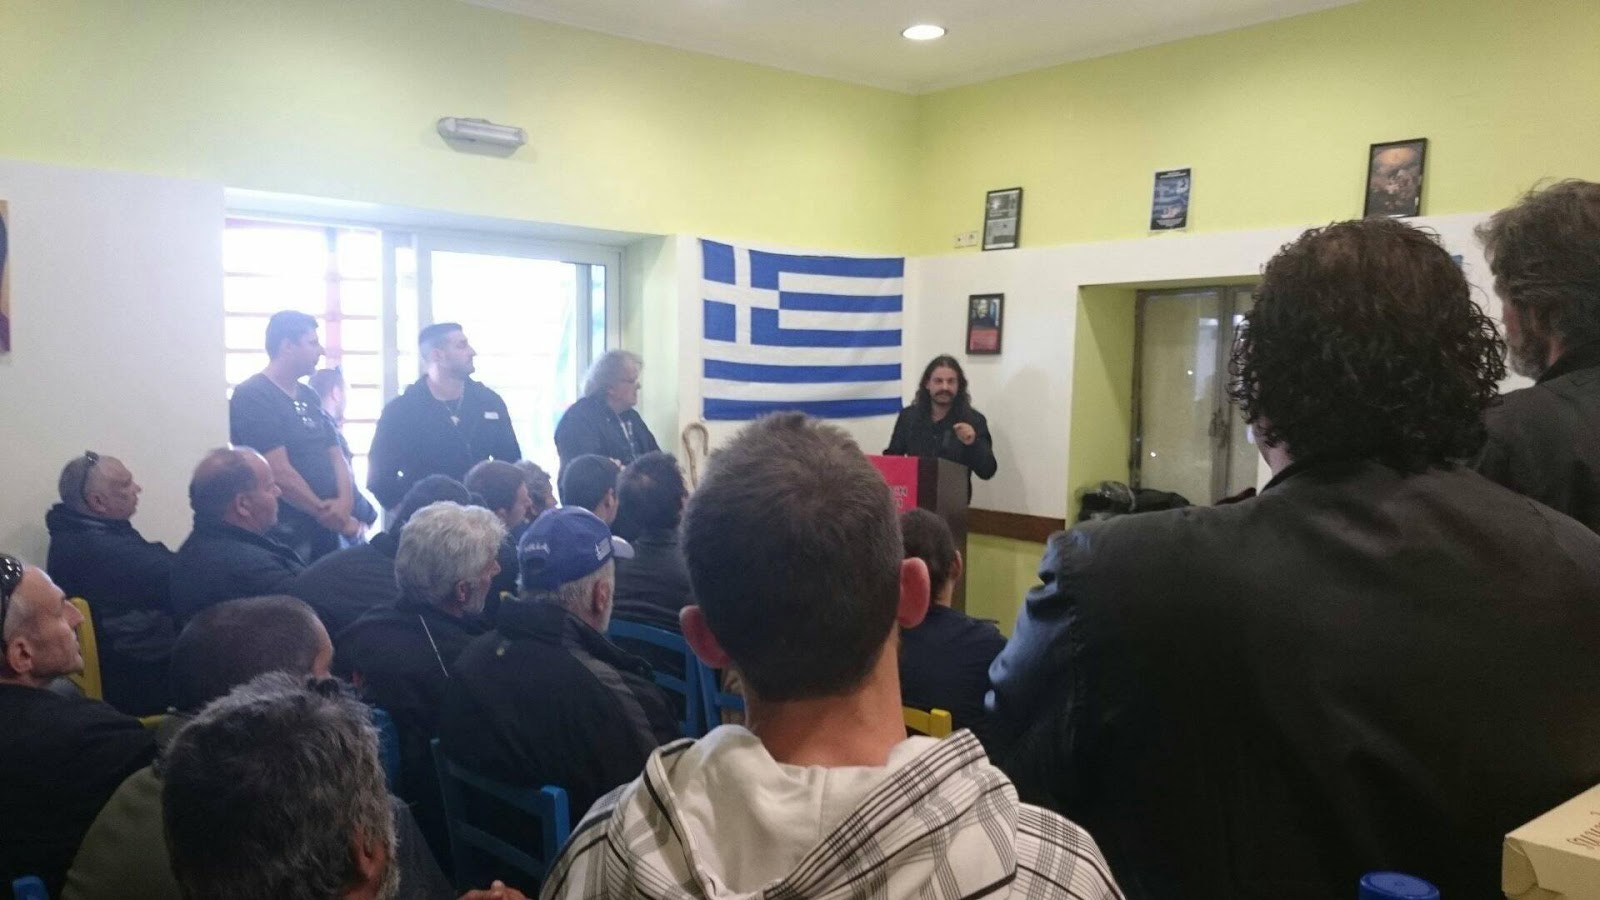 “Του Χότζα”: Στο τροτσκιστικό στέκι που σύχναζε ο Κώστας Νικηφορακης, τώρα στεγάζονται τα γραφεία της Χρυσής Αυγής